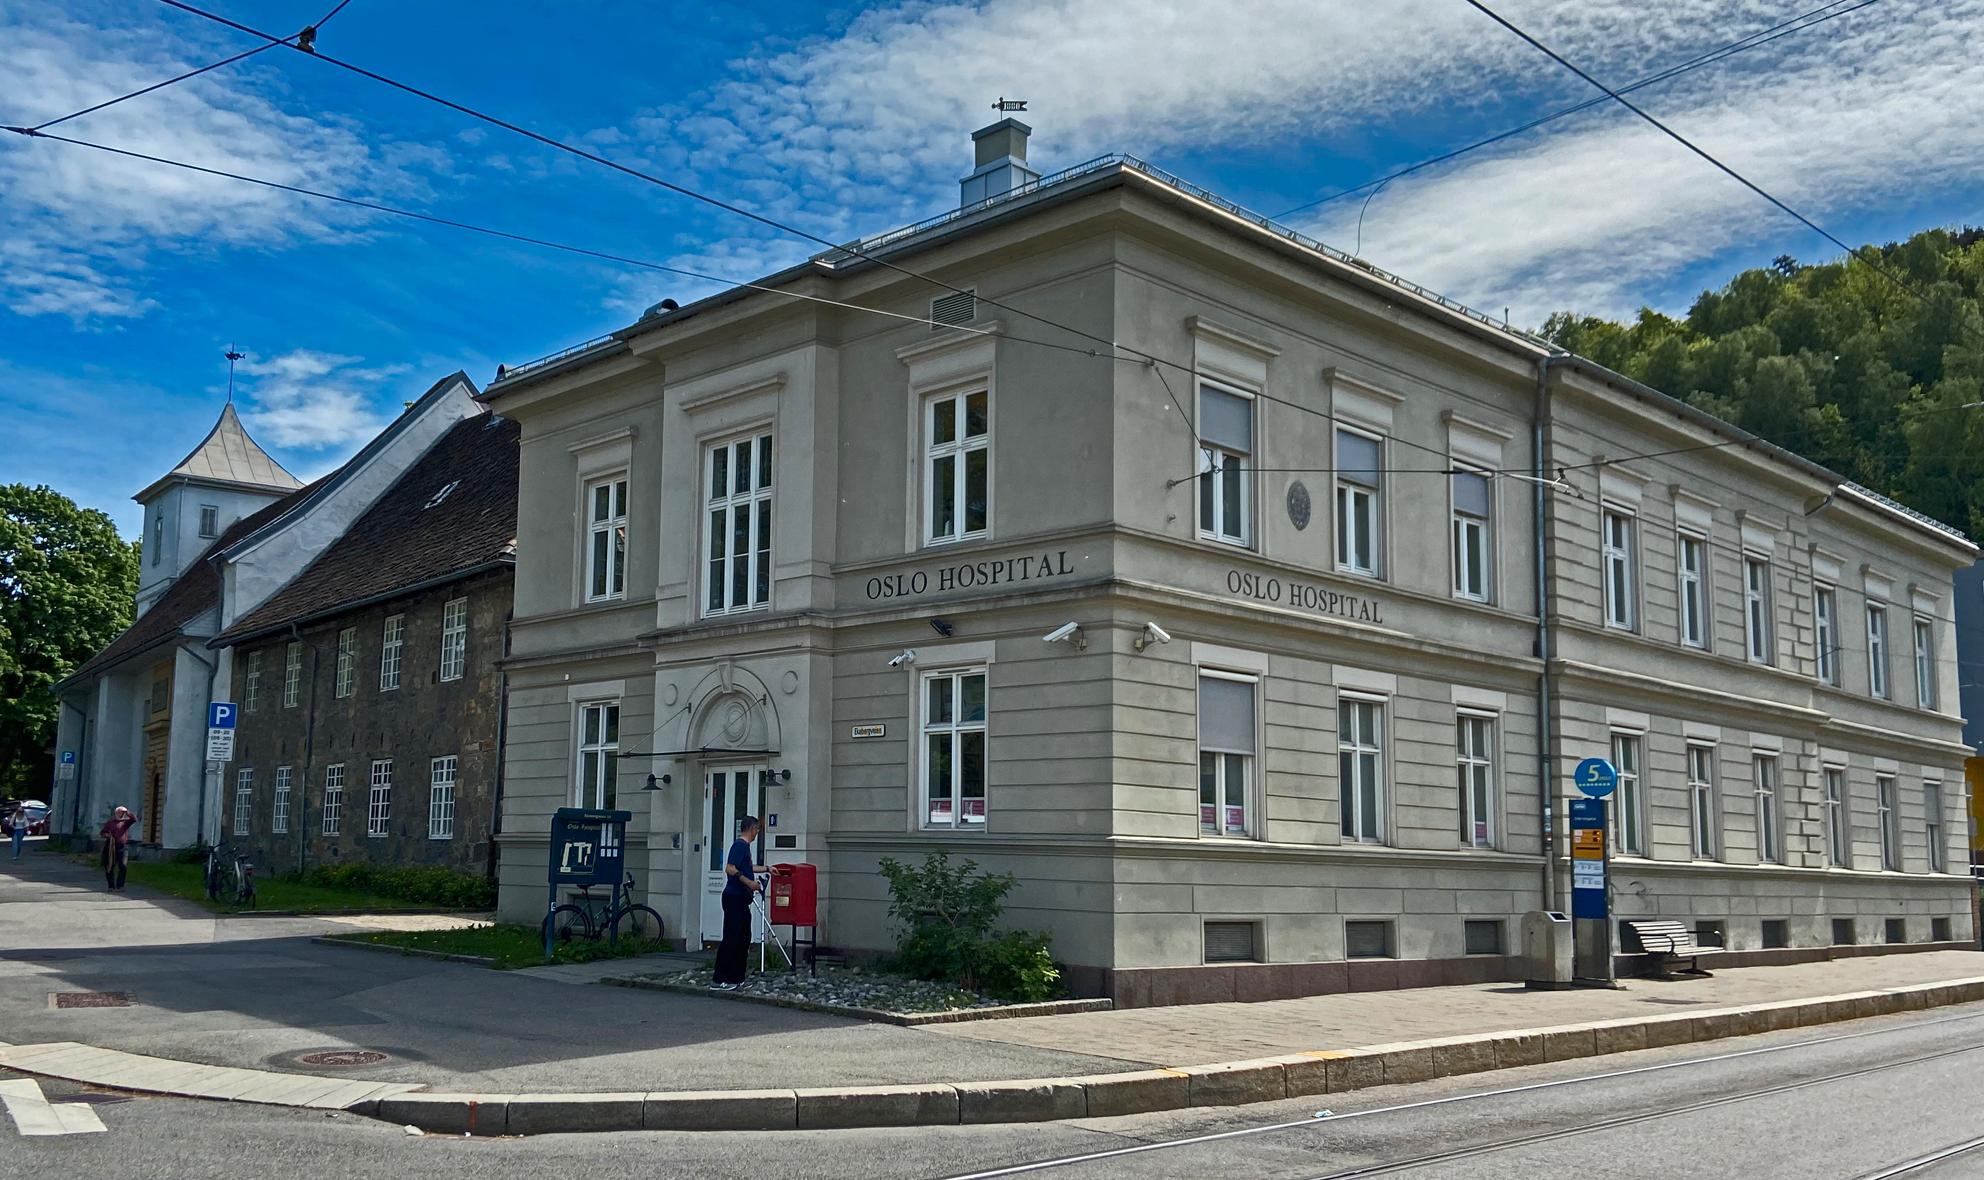 Oslo hospitals bygninger ble reist på klosterets ruiner. Den store Gråsteinsbygningen fra 1737 er Norges eldste eksisterende hospitalsbygning.